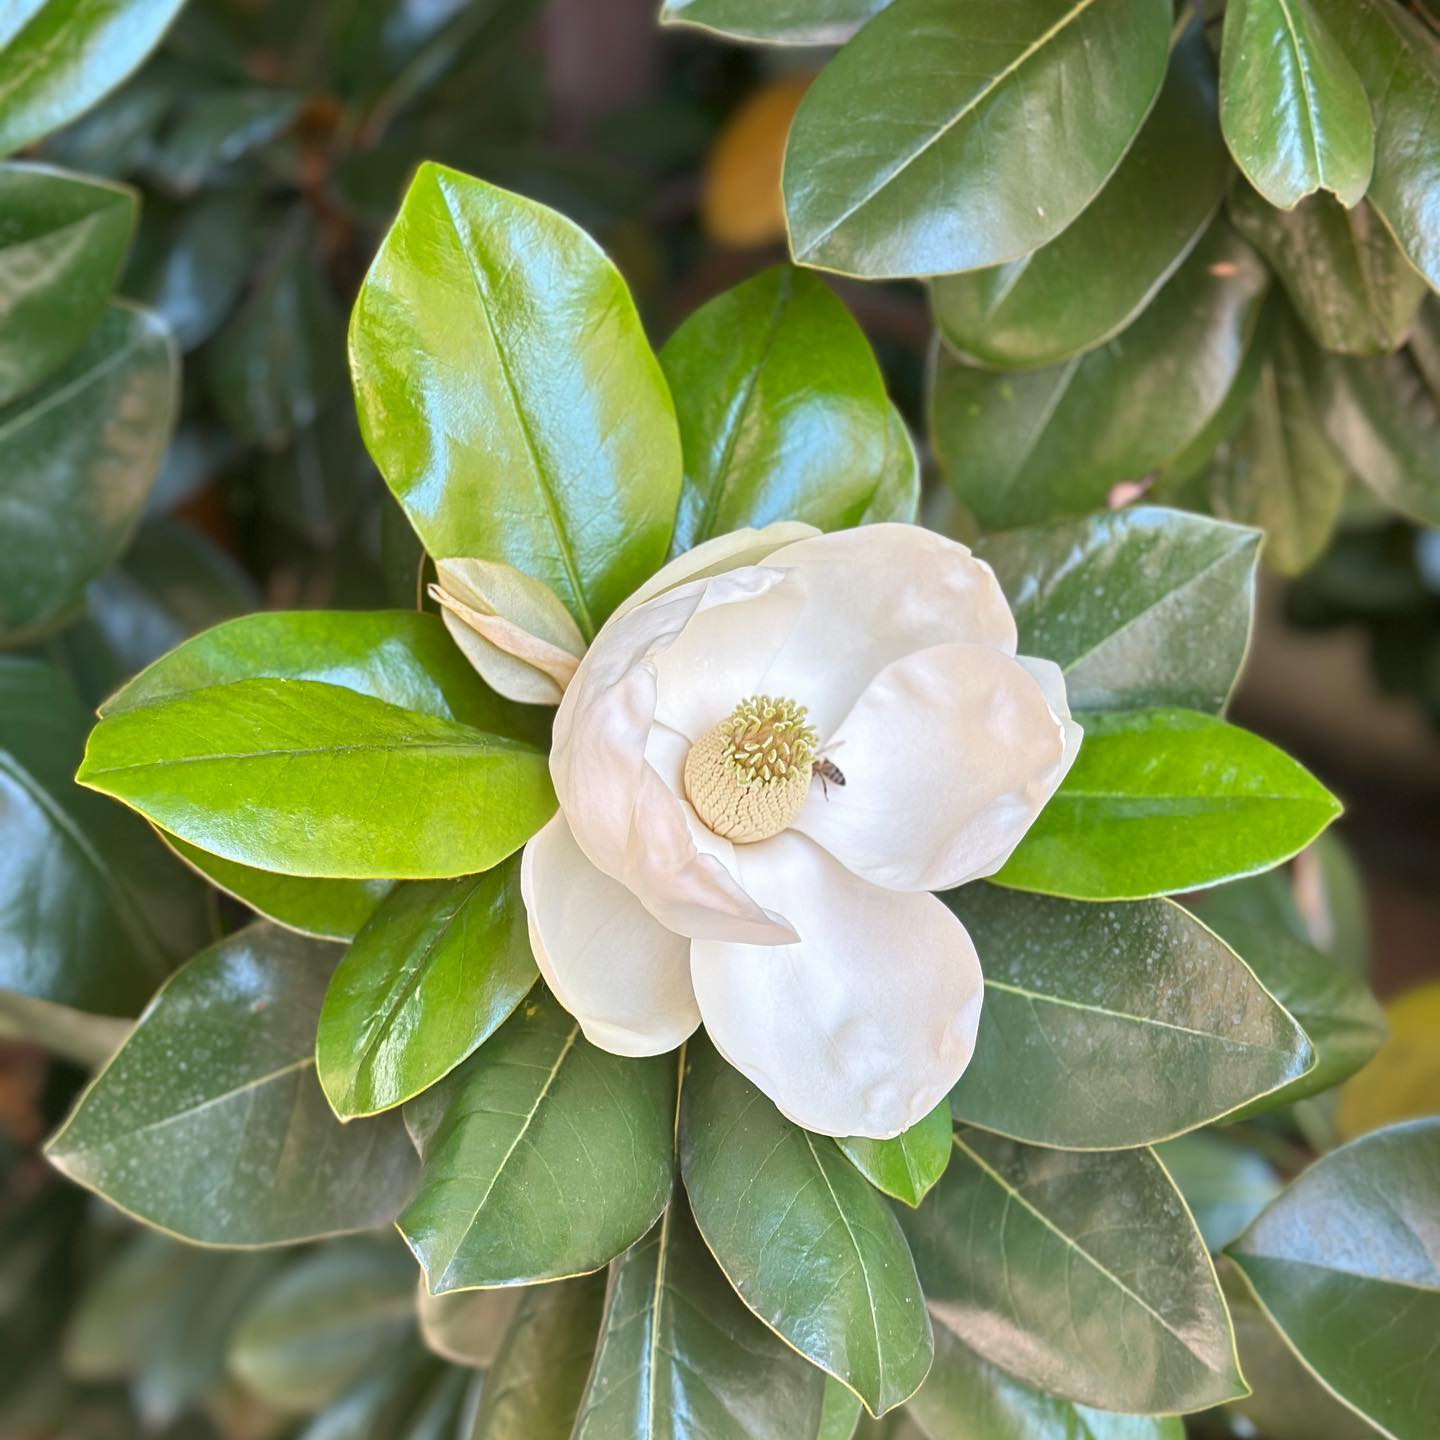 Moment de grație, cu Magnolia Grandiflora 🪷 În ultima vreme, mi se pare că observ mult mai lesne “the little things” despre care vorbim cu toții cu patos dar pe care de cele mai multe ori le ignorăm, fiindcă stăm cu ochii în ecrane. 

#nofilter, evident 🔹

#littlemoments #magnolia #lifeisaflower